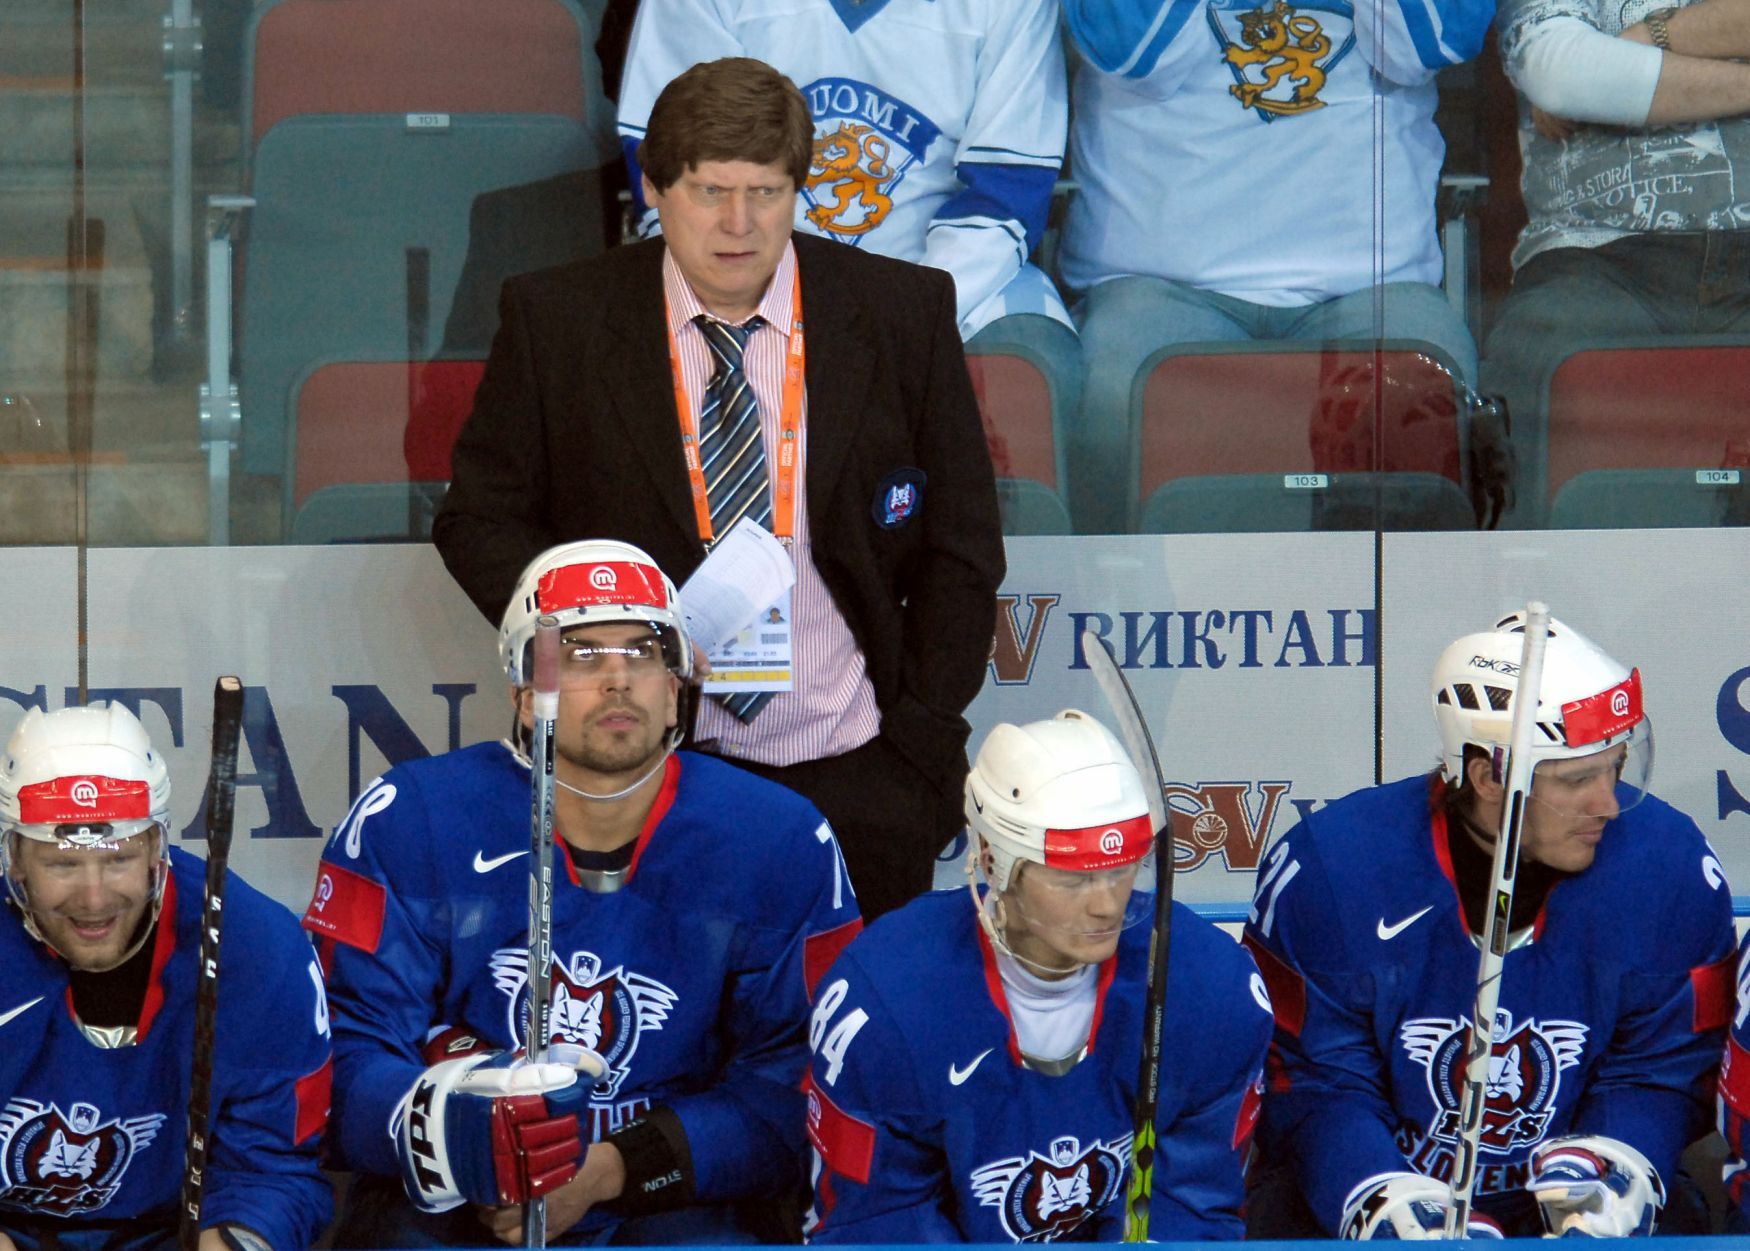 MS v hokeji 2006: Trenér František Výborný na lavičce slovinské reprezentace